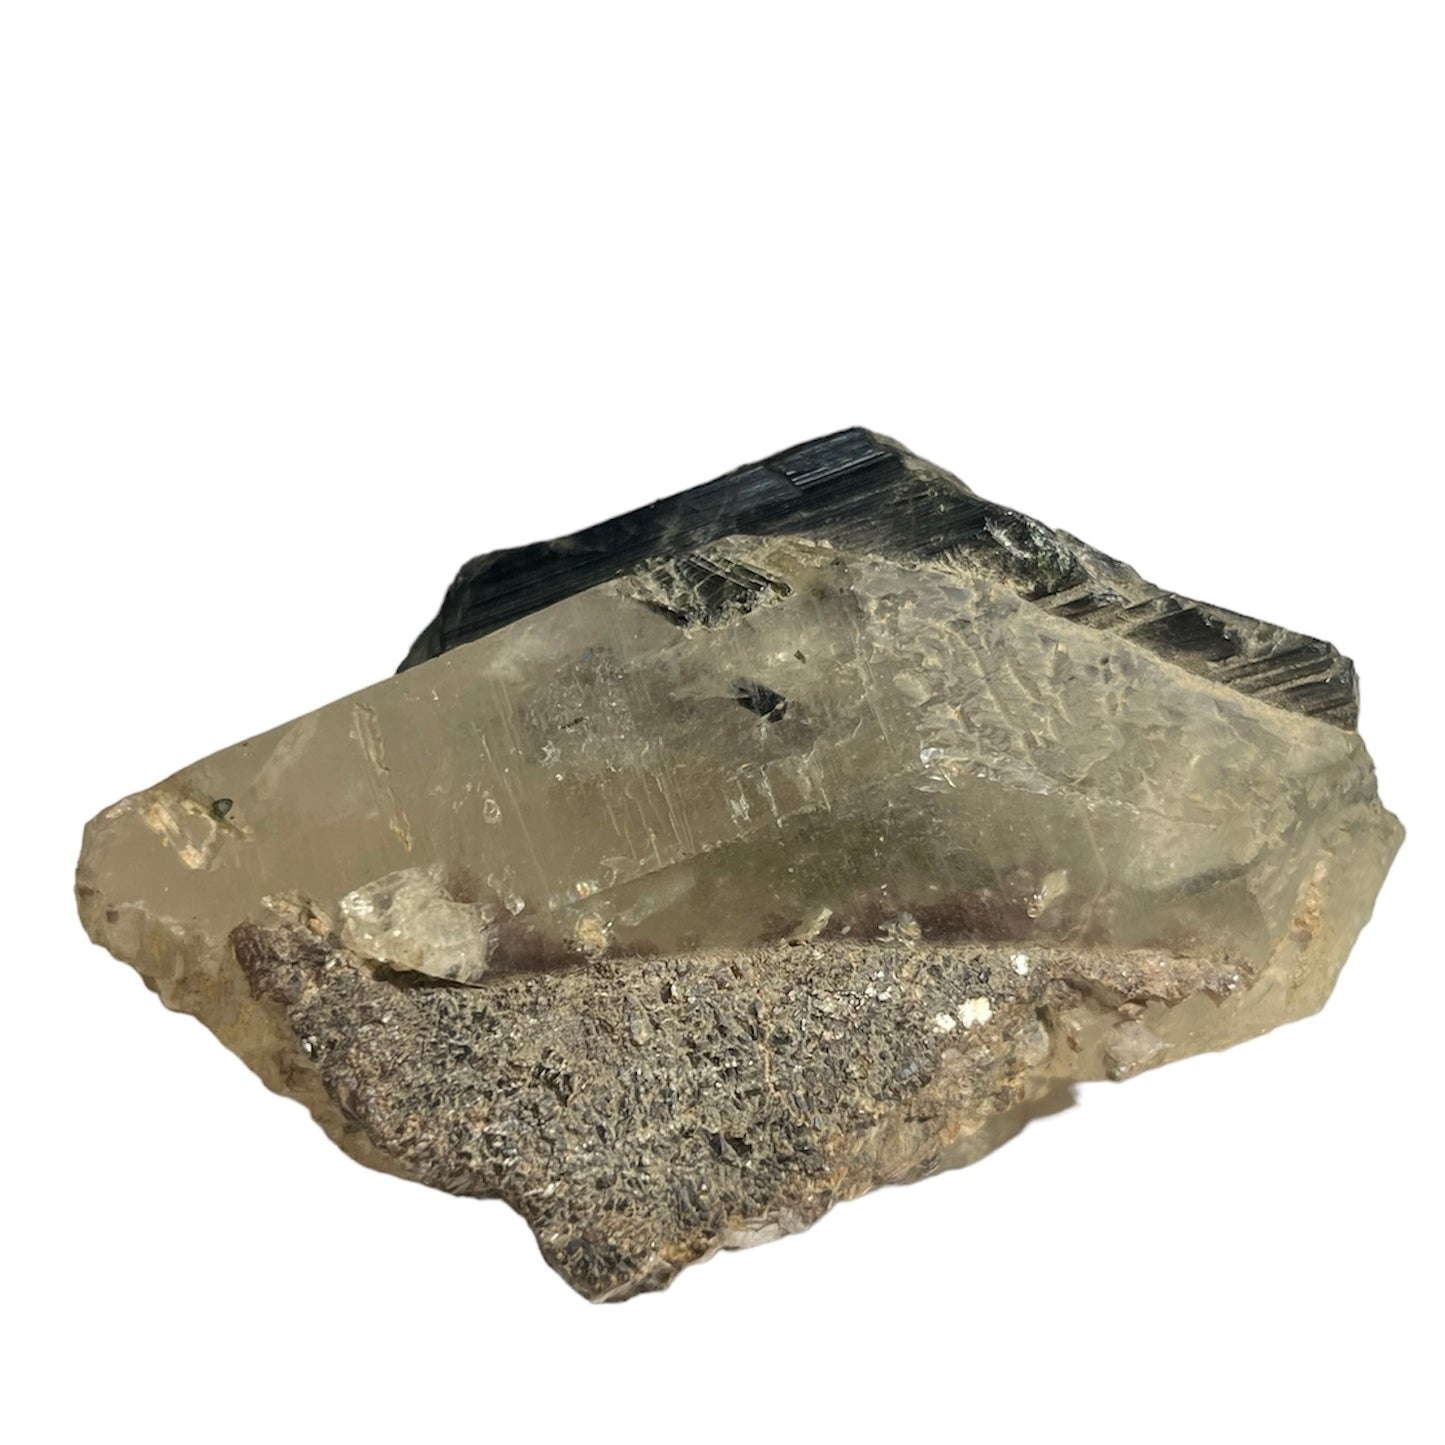 Epidote sur quartz minas Gerais Brésil C37